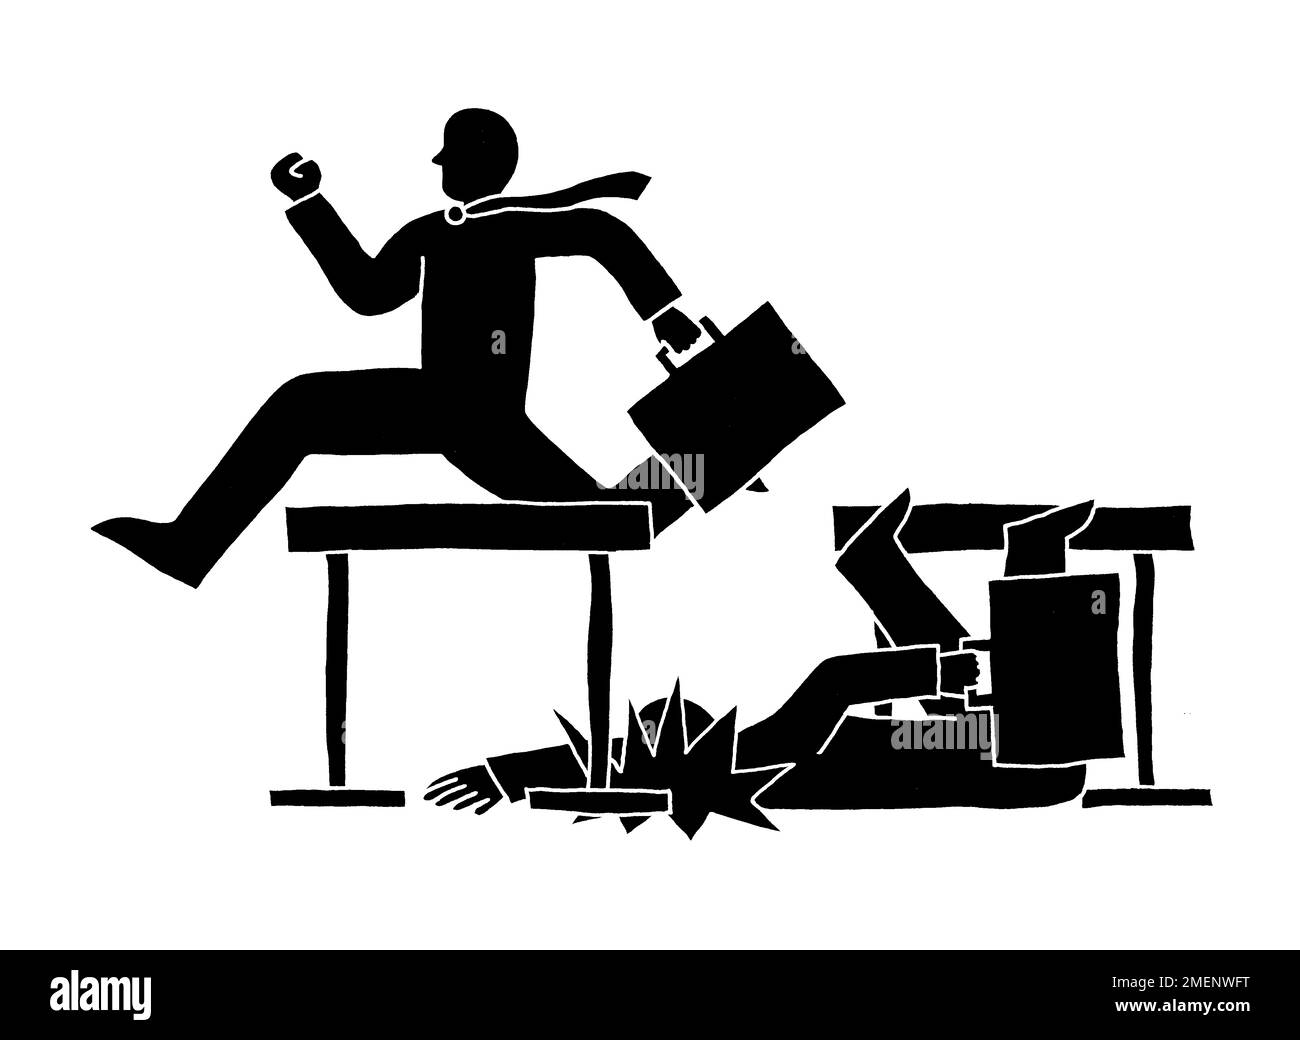 Schwarz-Weiß-Darstellung eines Geschäftsmanns, der die Hürde überspringt und eines Geschäftsmanns, der die Hürde überwindet Stockfoto